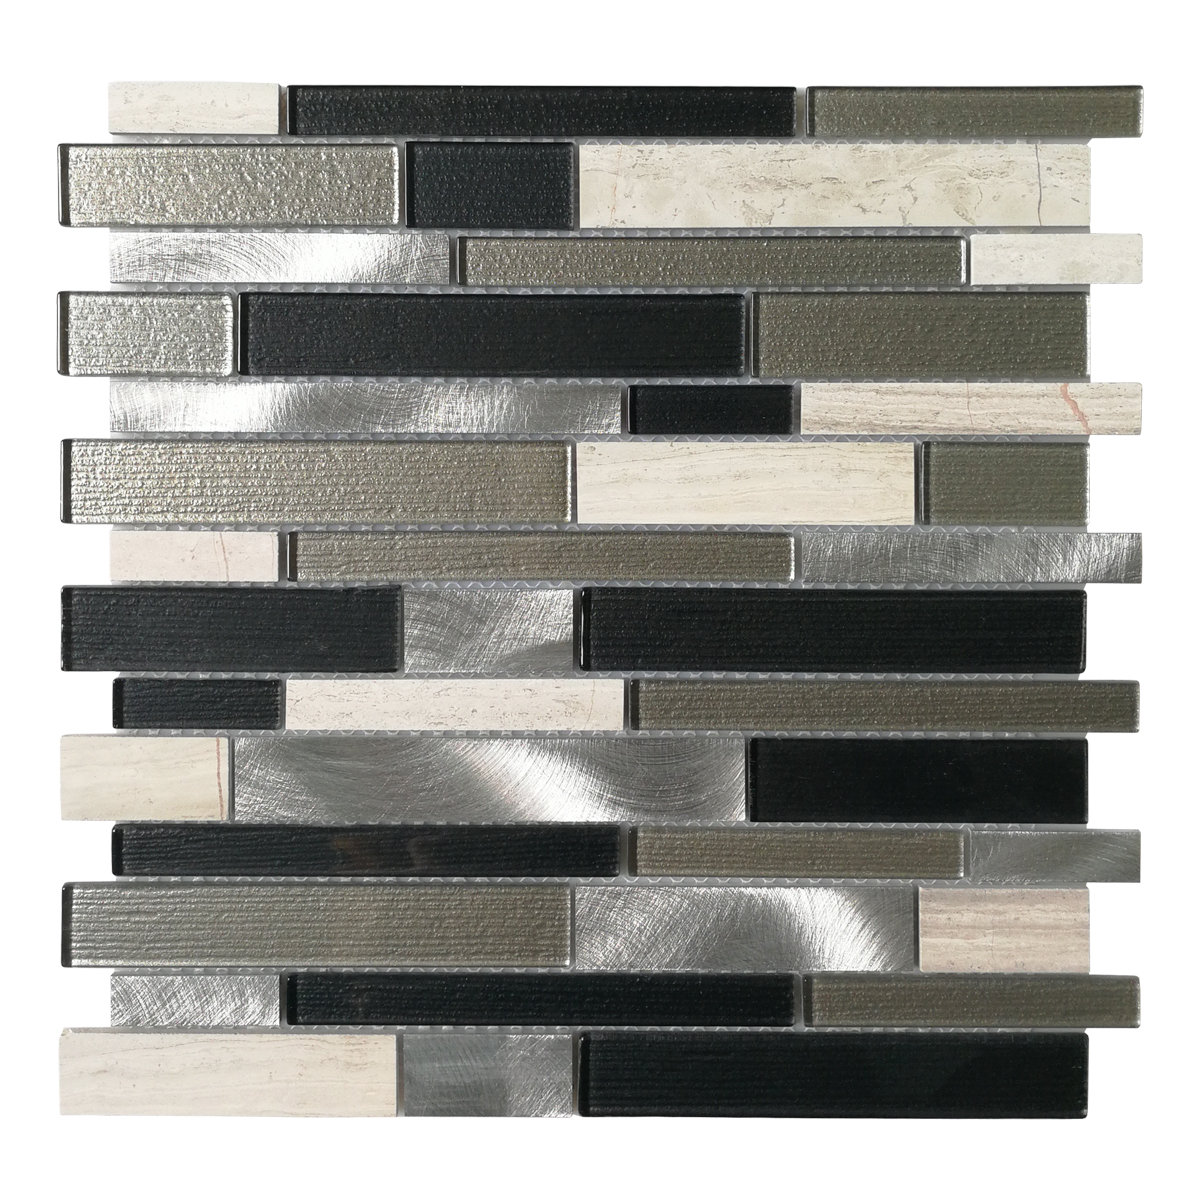 Art3d Decorative Glass / Stone / Metal Tile for Kitchen Backsplash / Bathroom Backsplash (10 Pack)